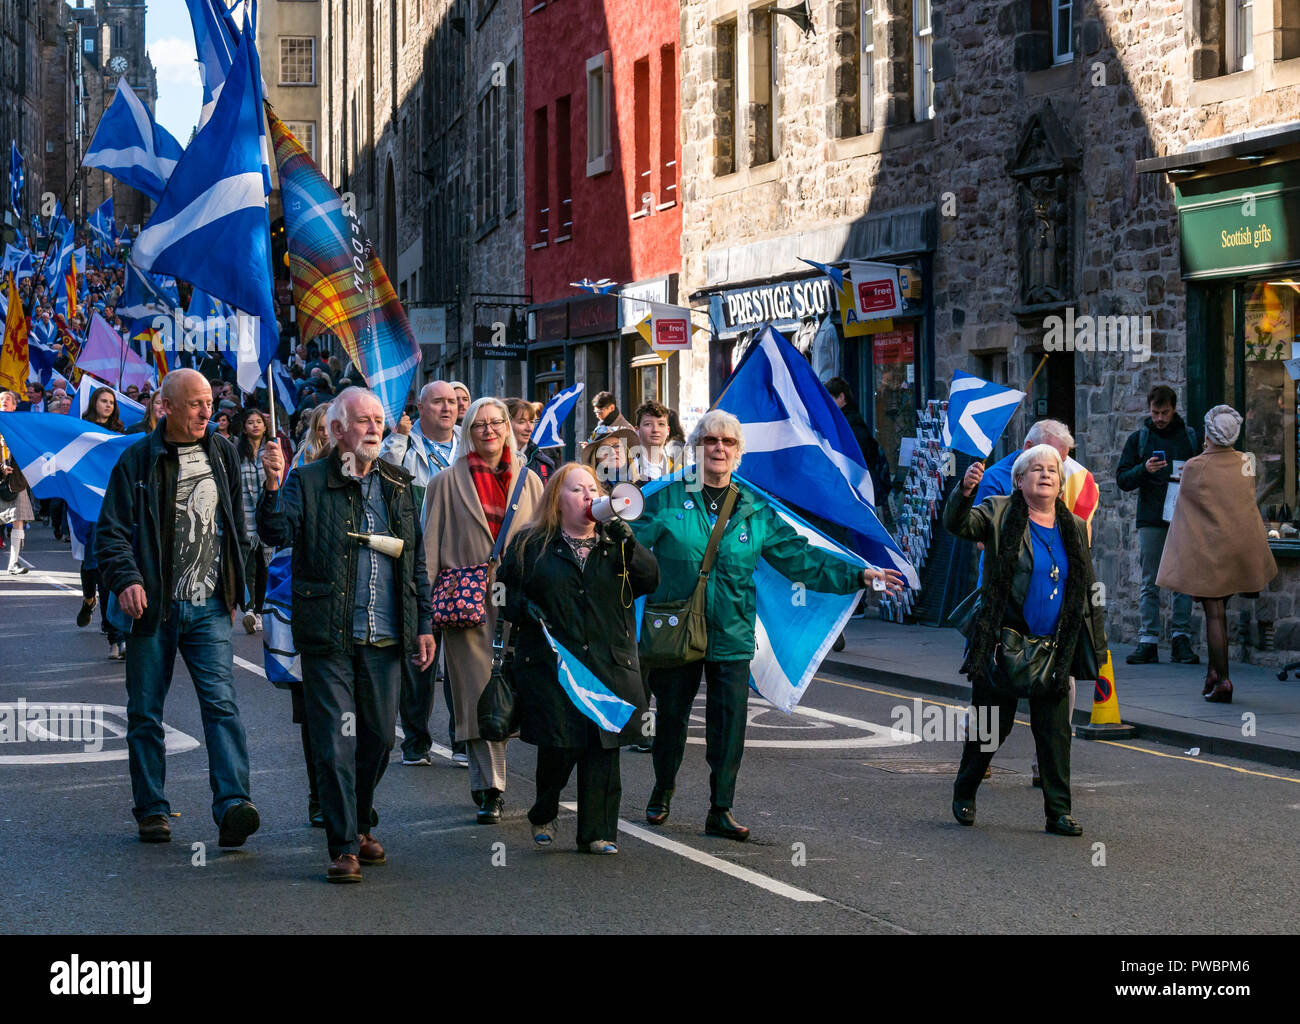 Gens portant des drapeaux nationaux marcher du tout sous une même bannière AUOB mars 2018 l'indépendance de l'Ecosse, Royal Mile, Édimbourg, Écosse, Royaume-Uni Banque D'Images